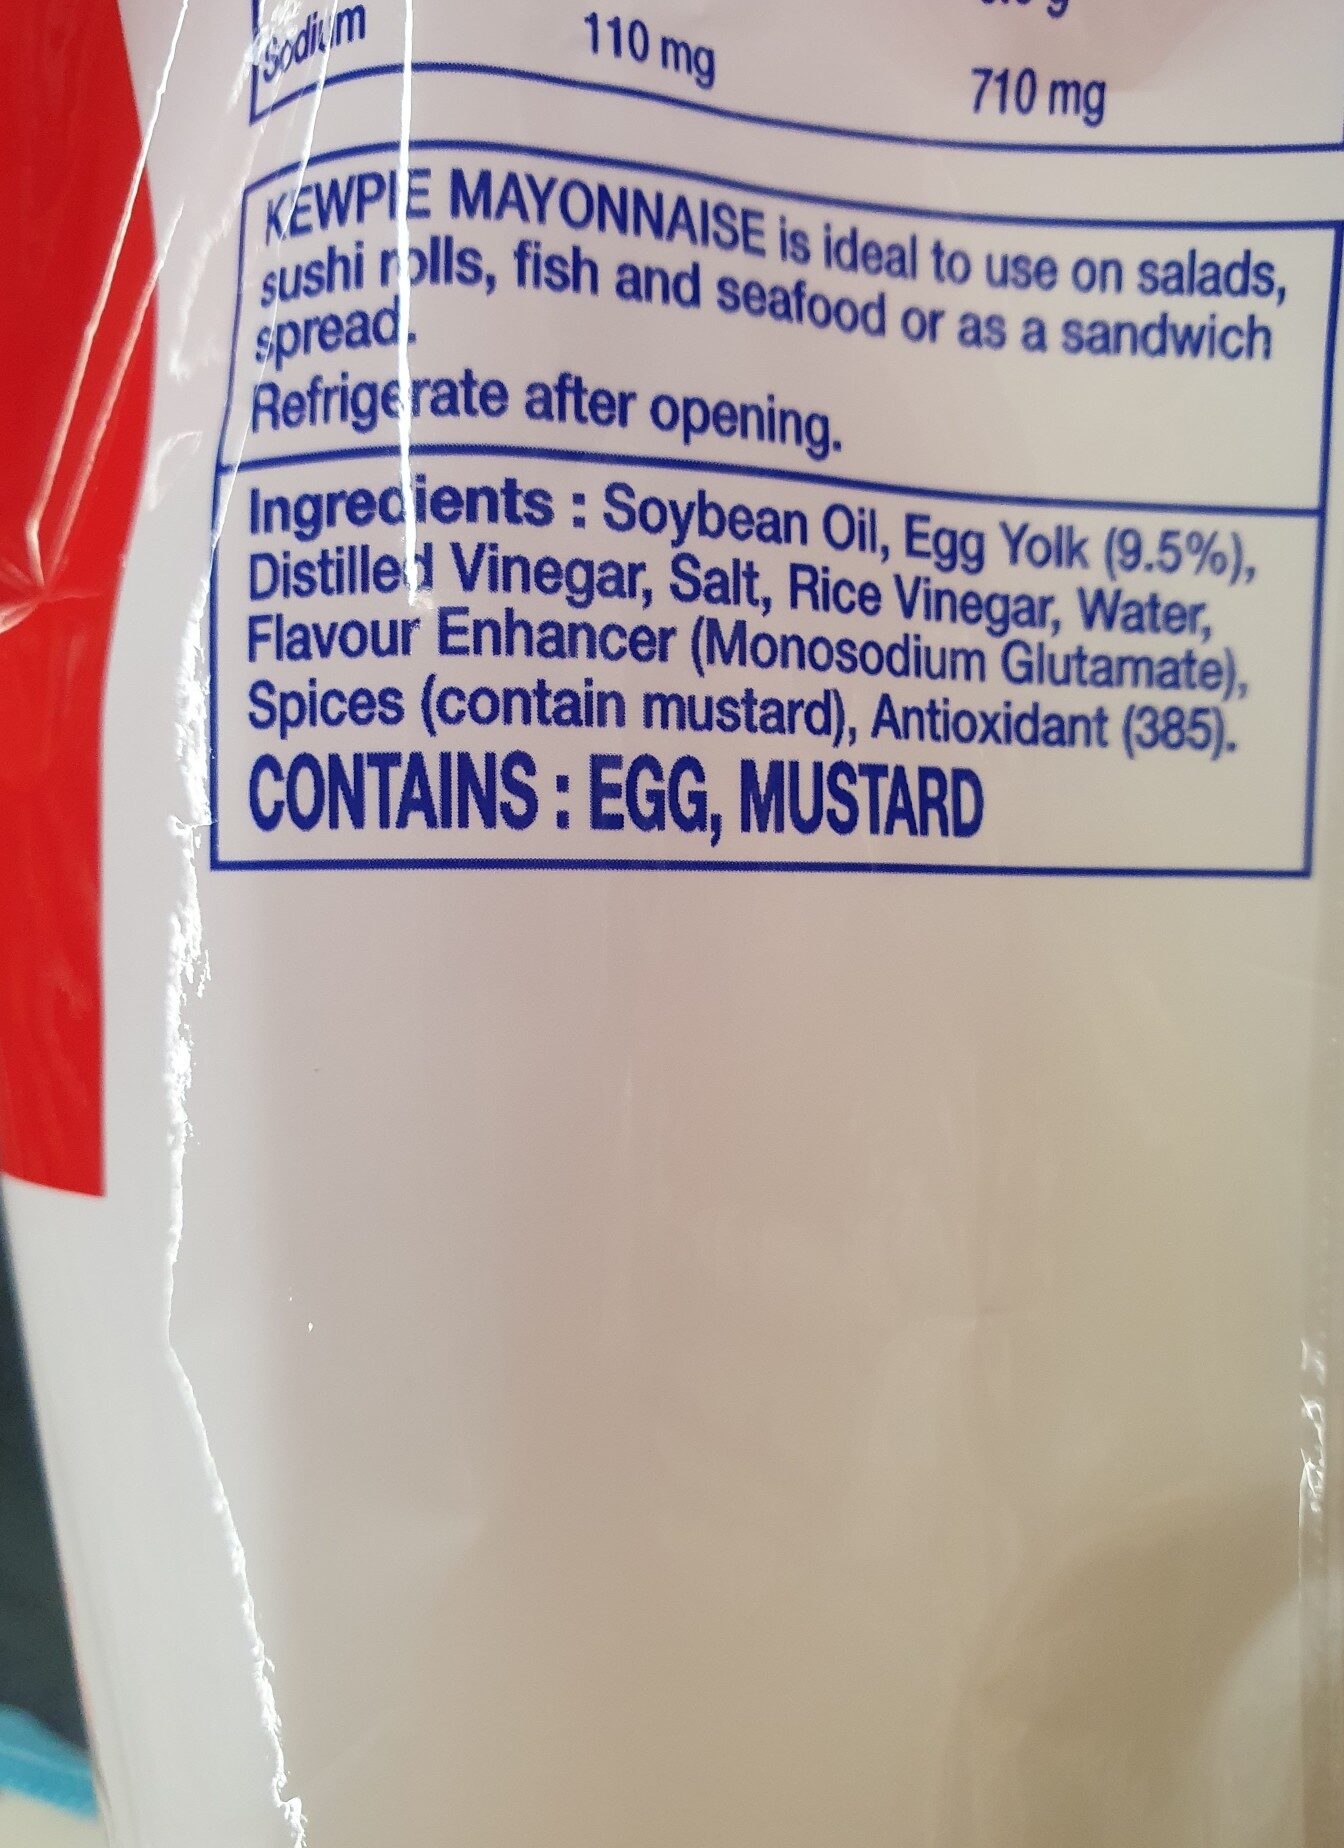 kewpie mayonnaise - Ingredients - en